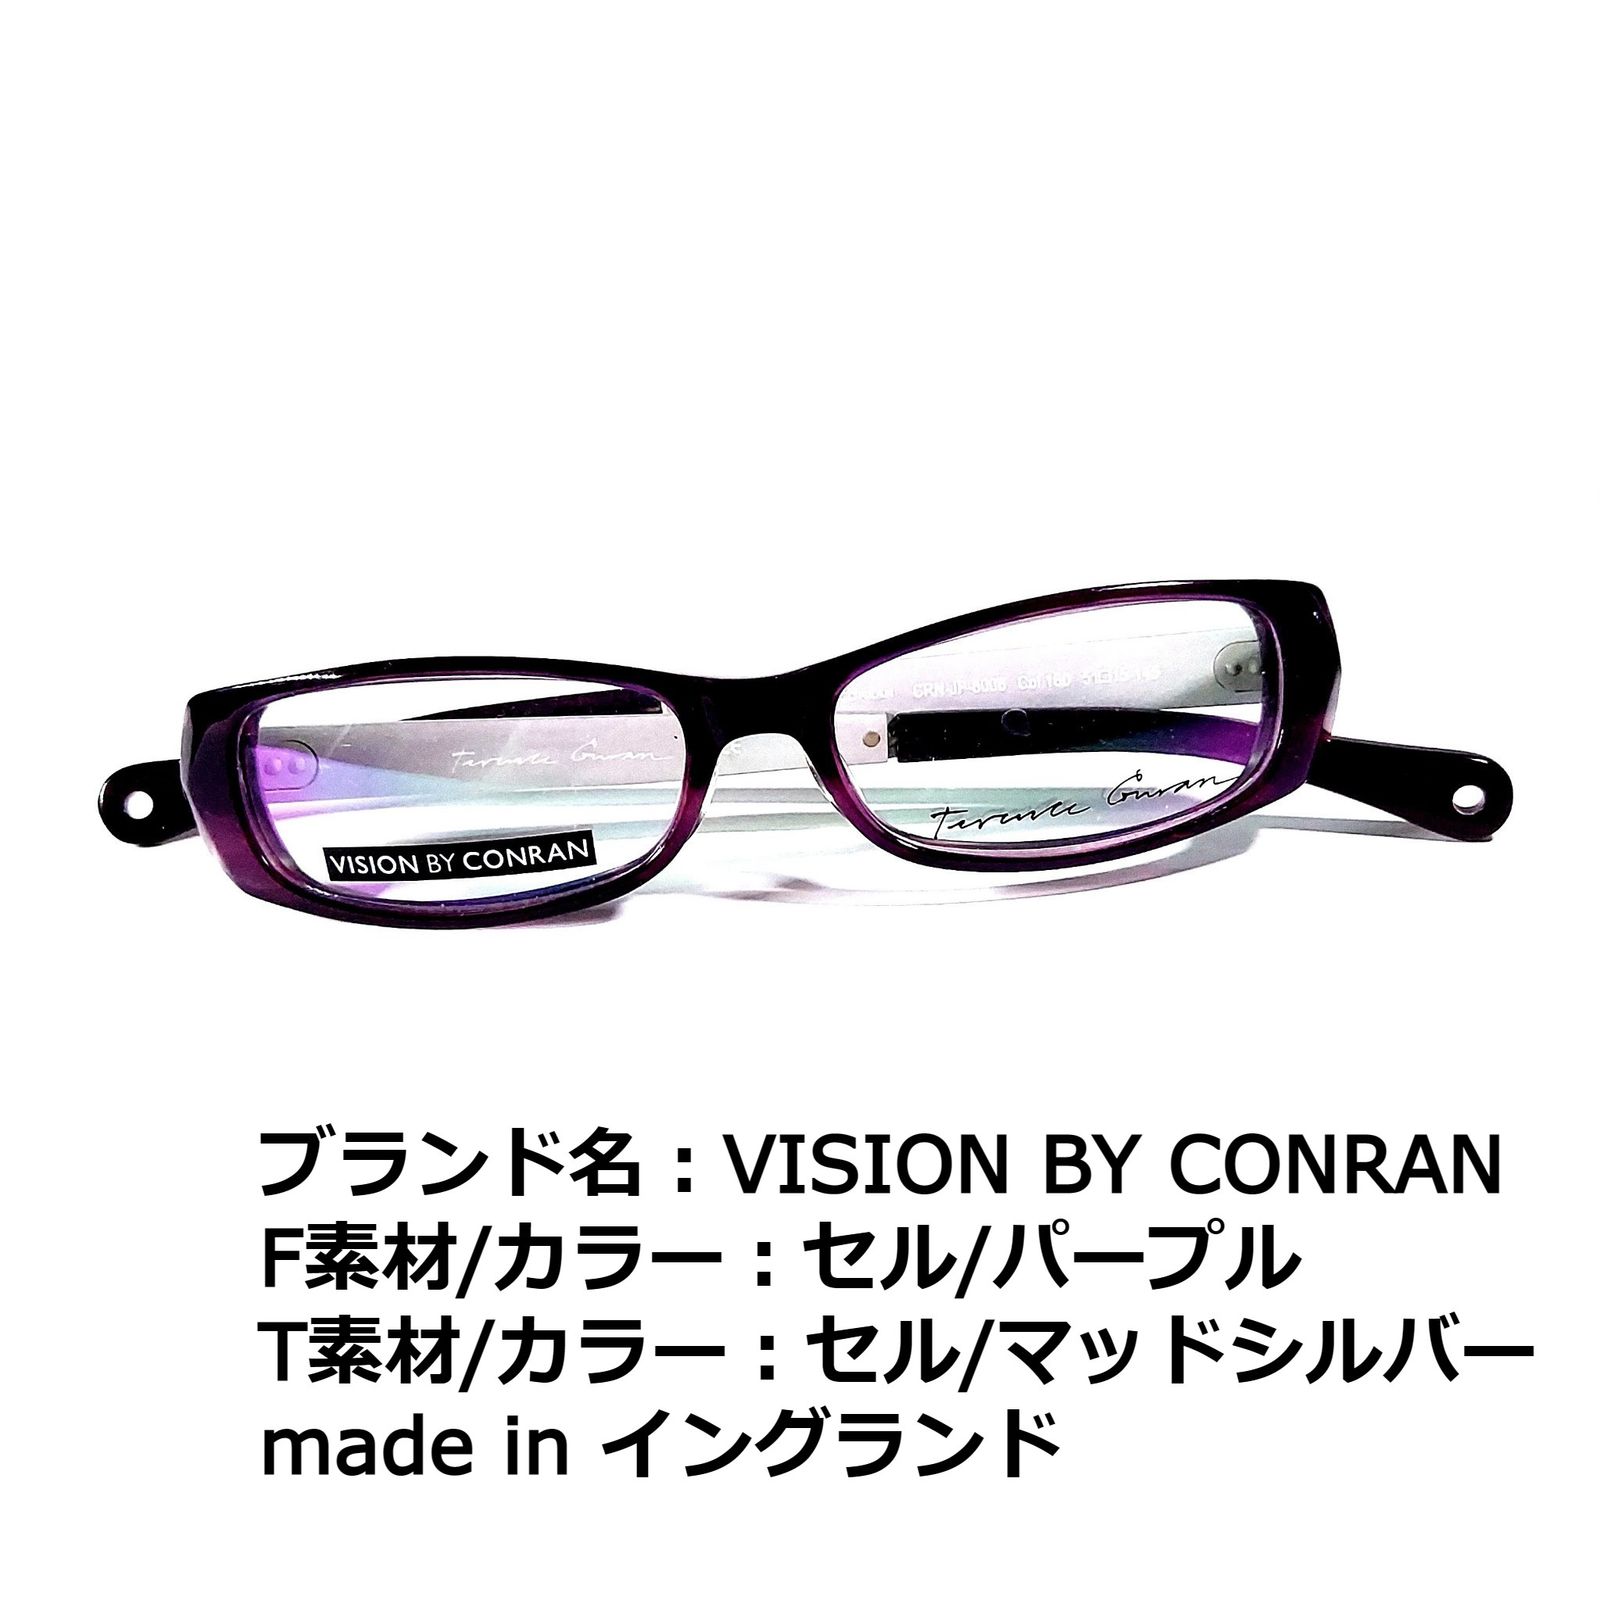 No.2097-メガネ　VISION BY　CONRAN【フレームのみ価格】合金セルフロントカラー